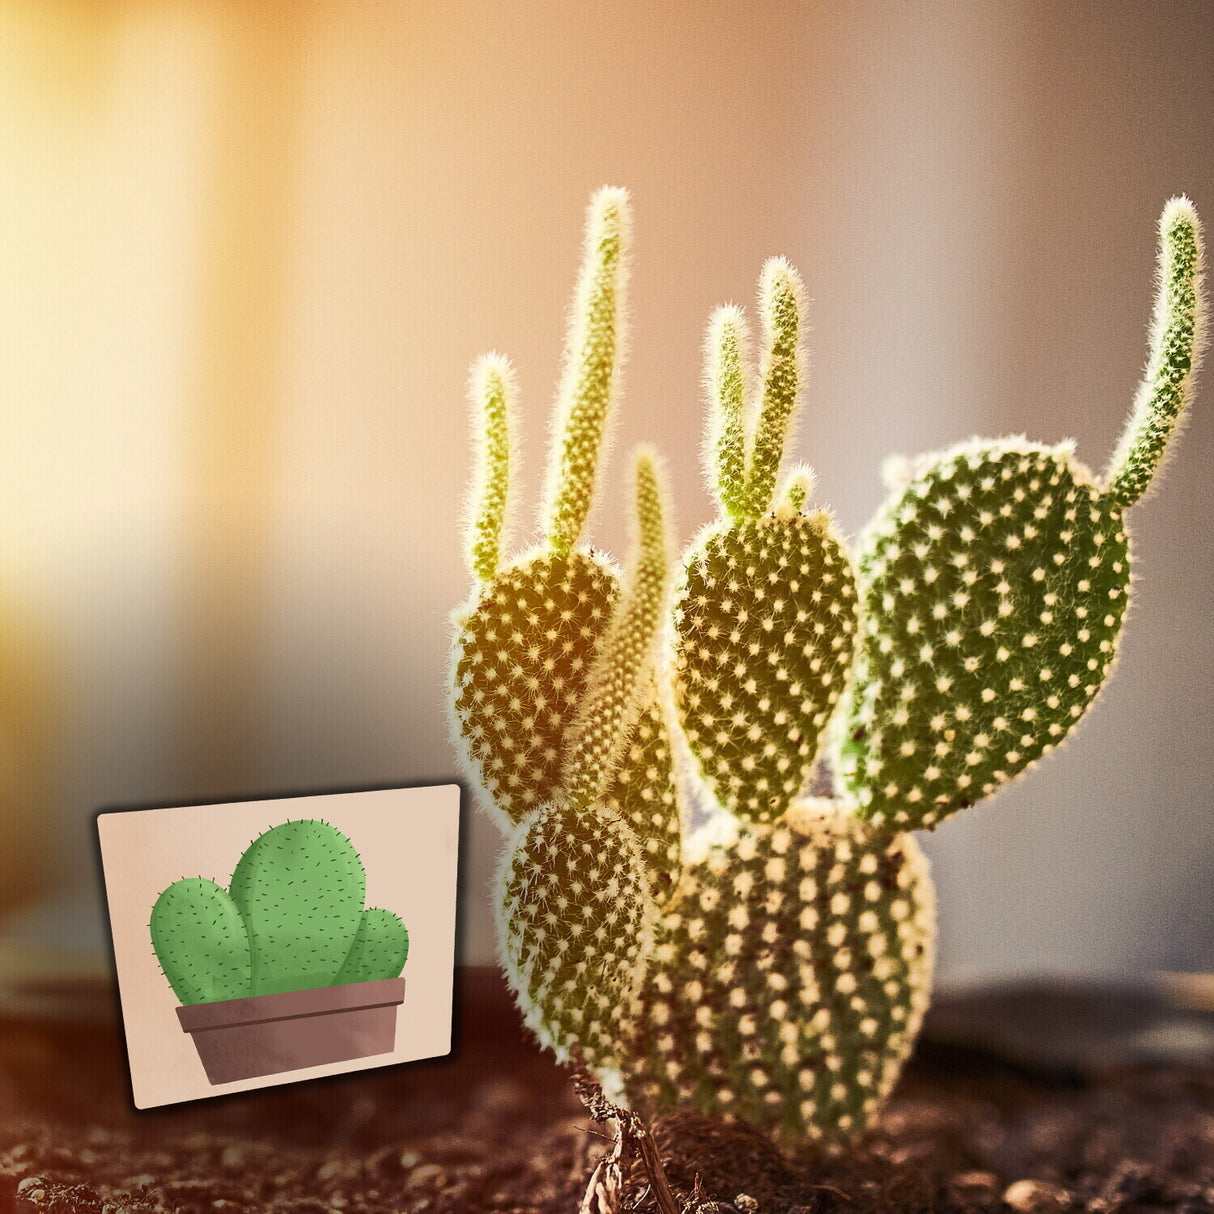 Kaktus Kühlschrankmagnete im 8er Set